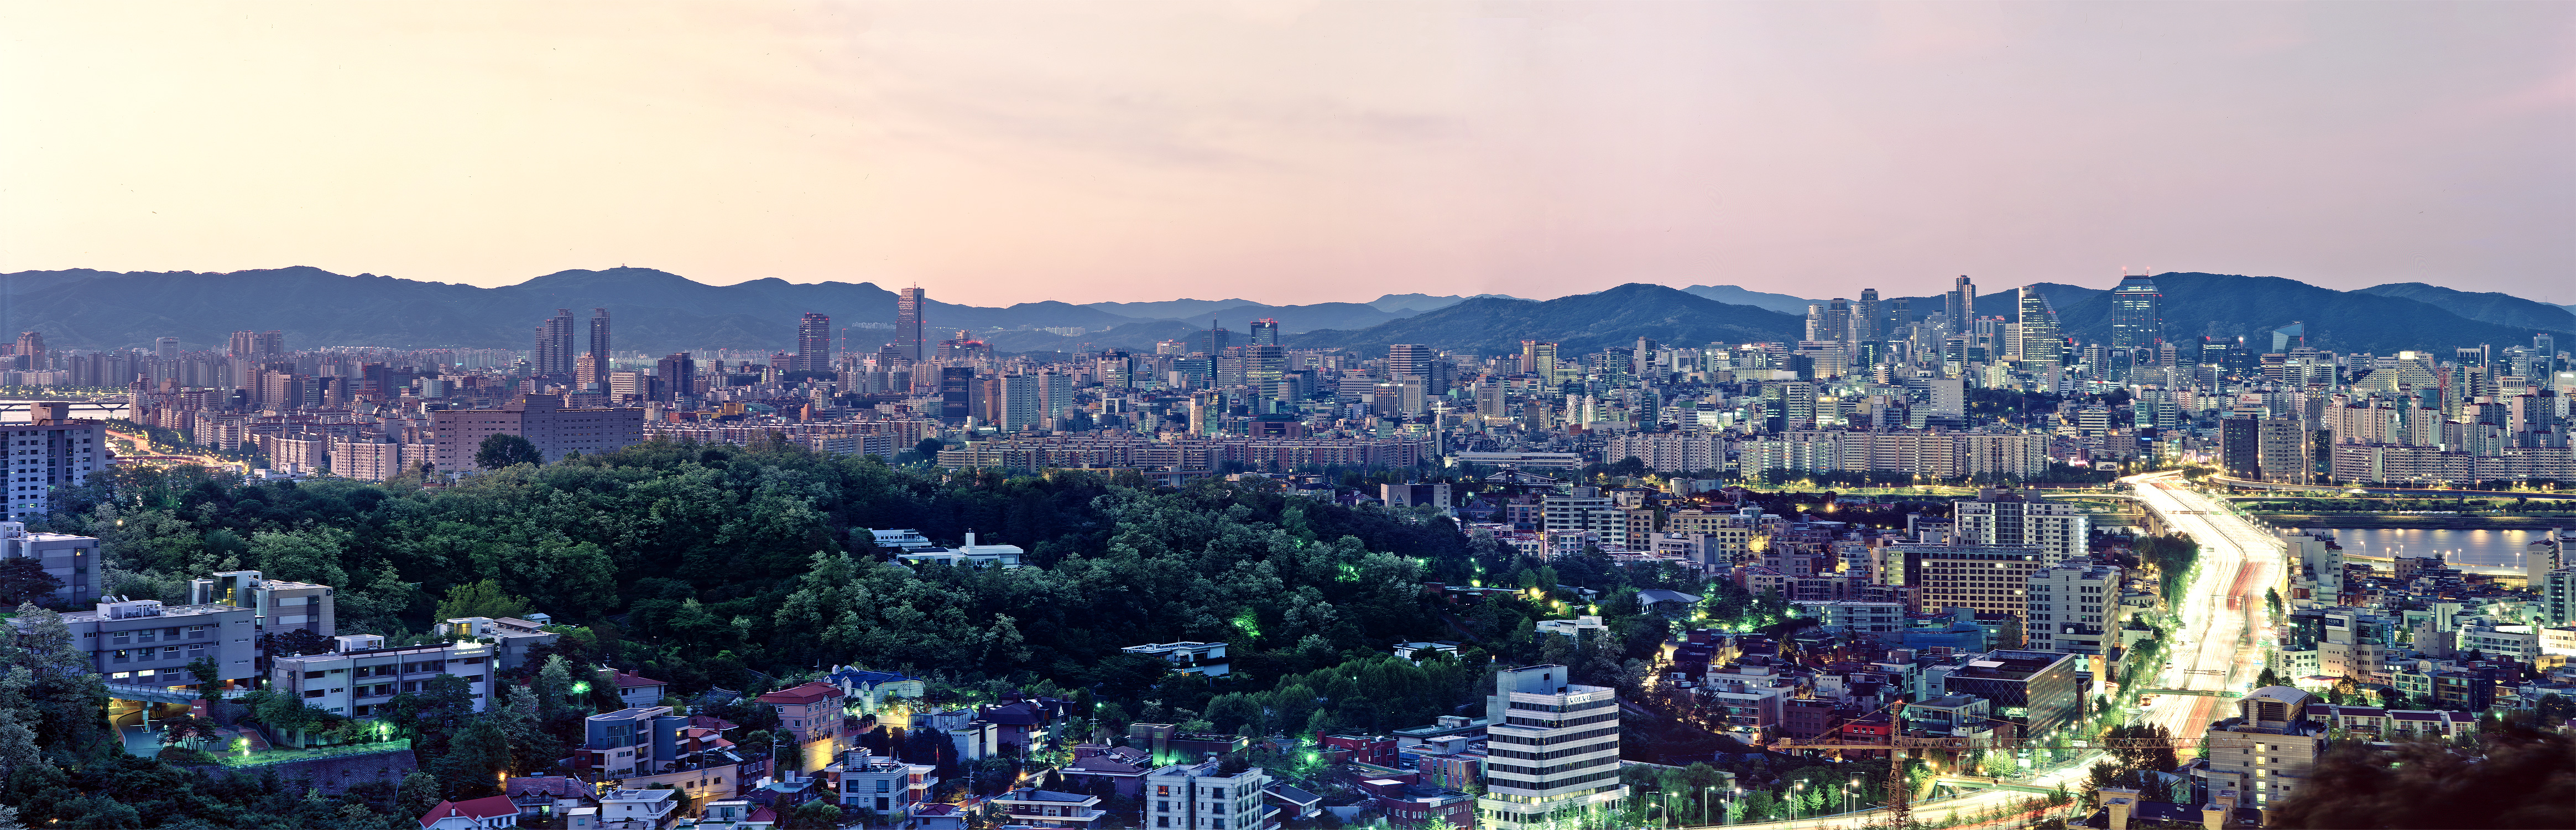 City Seoul 4658x1500